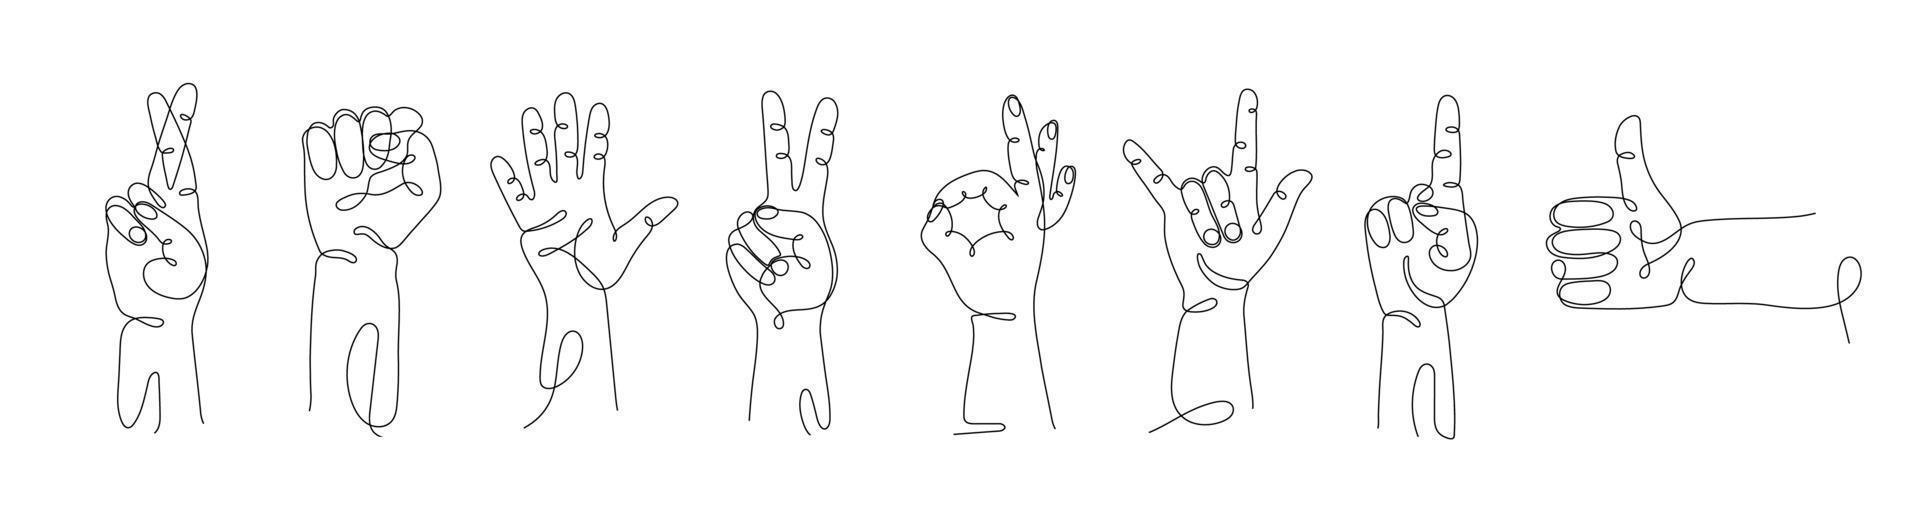 single lijn getrokken hand- gebaren set, minimalistisch menselijk handen met Leuk vinden teken, OK, een, twee, vijf, steen, hou op, Hallo, vuist, kruis vingers, richten vinger. dynamisch doorlopend een lijn grafisch vector